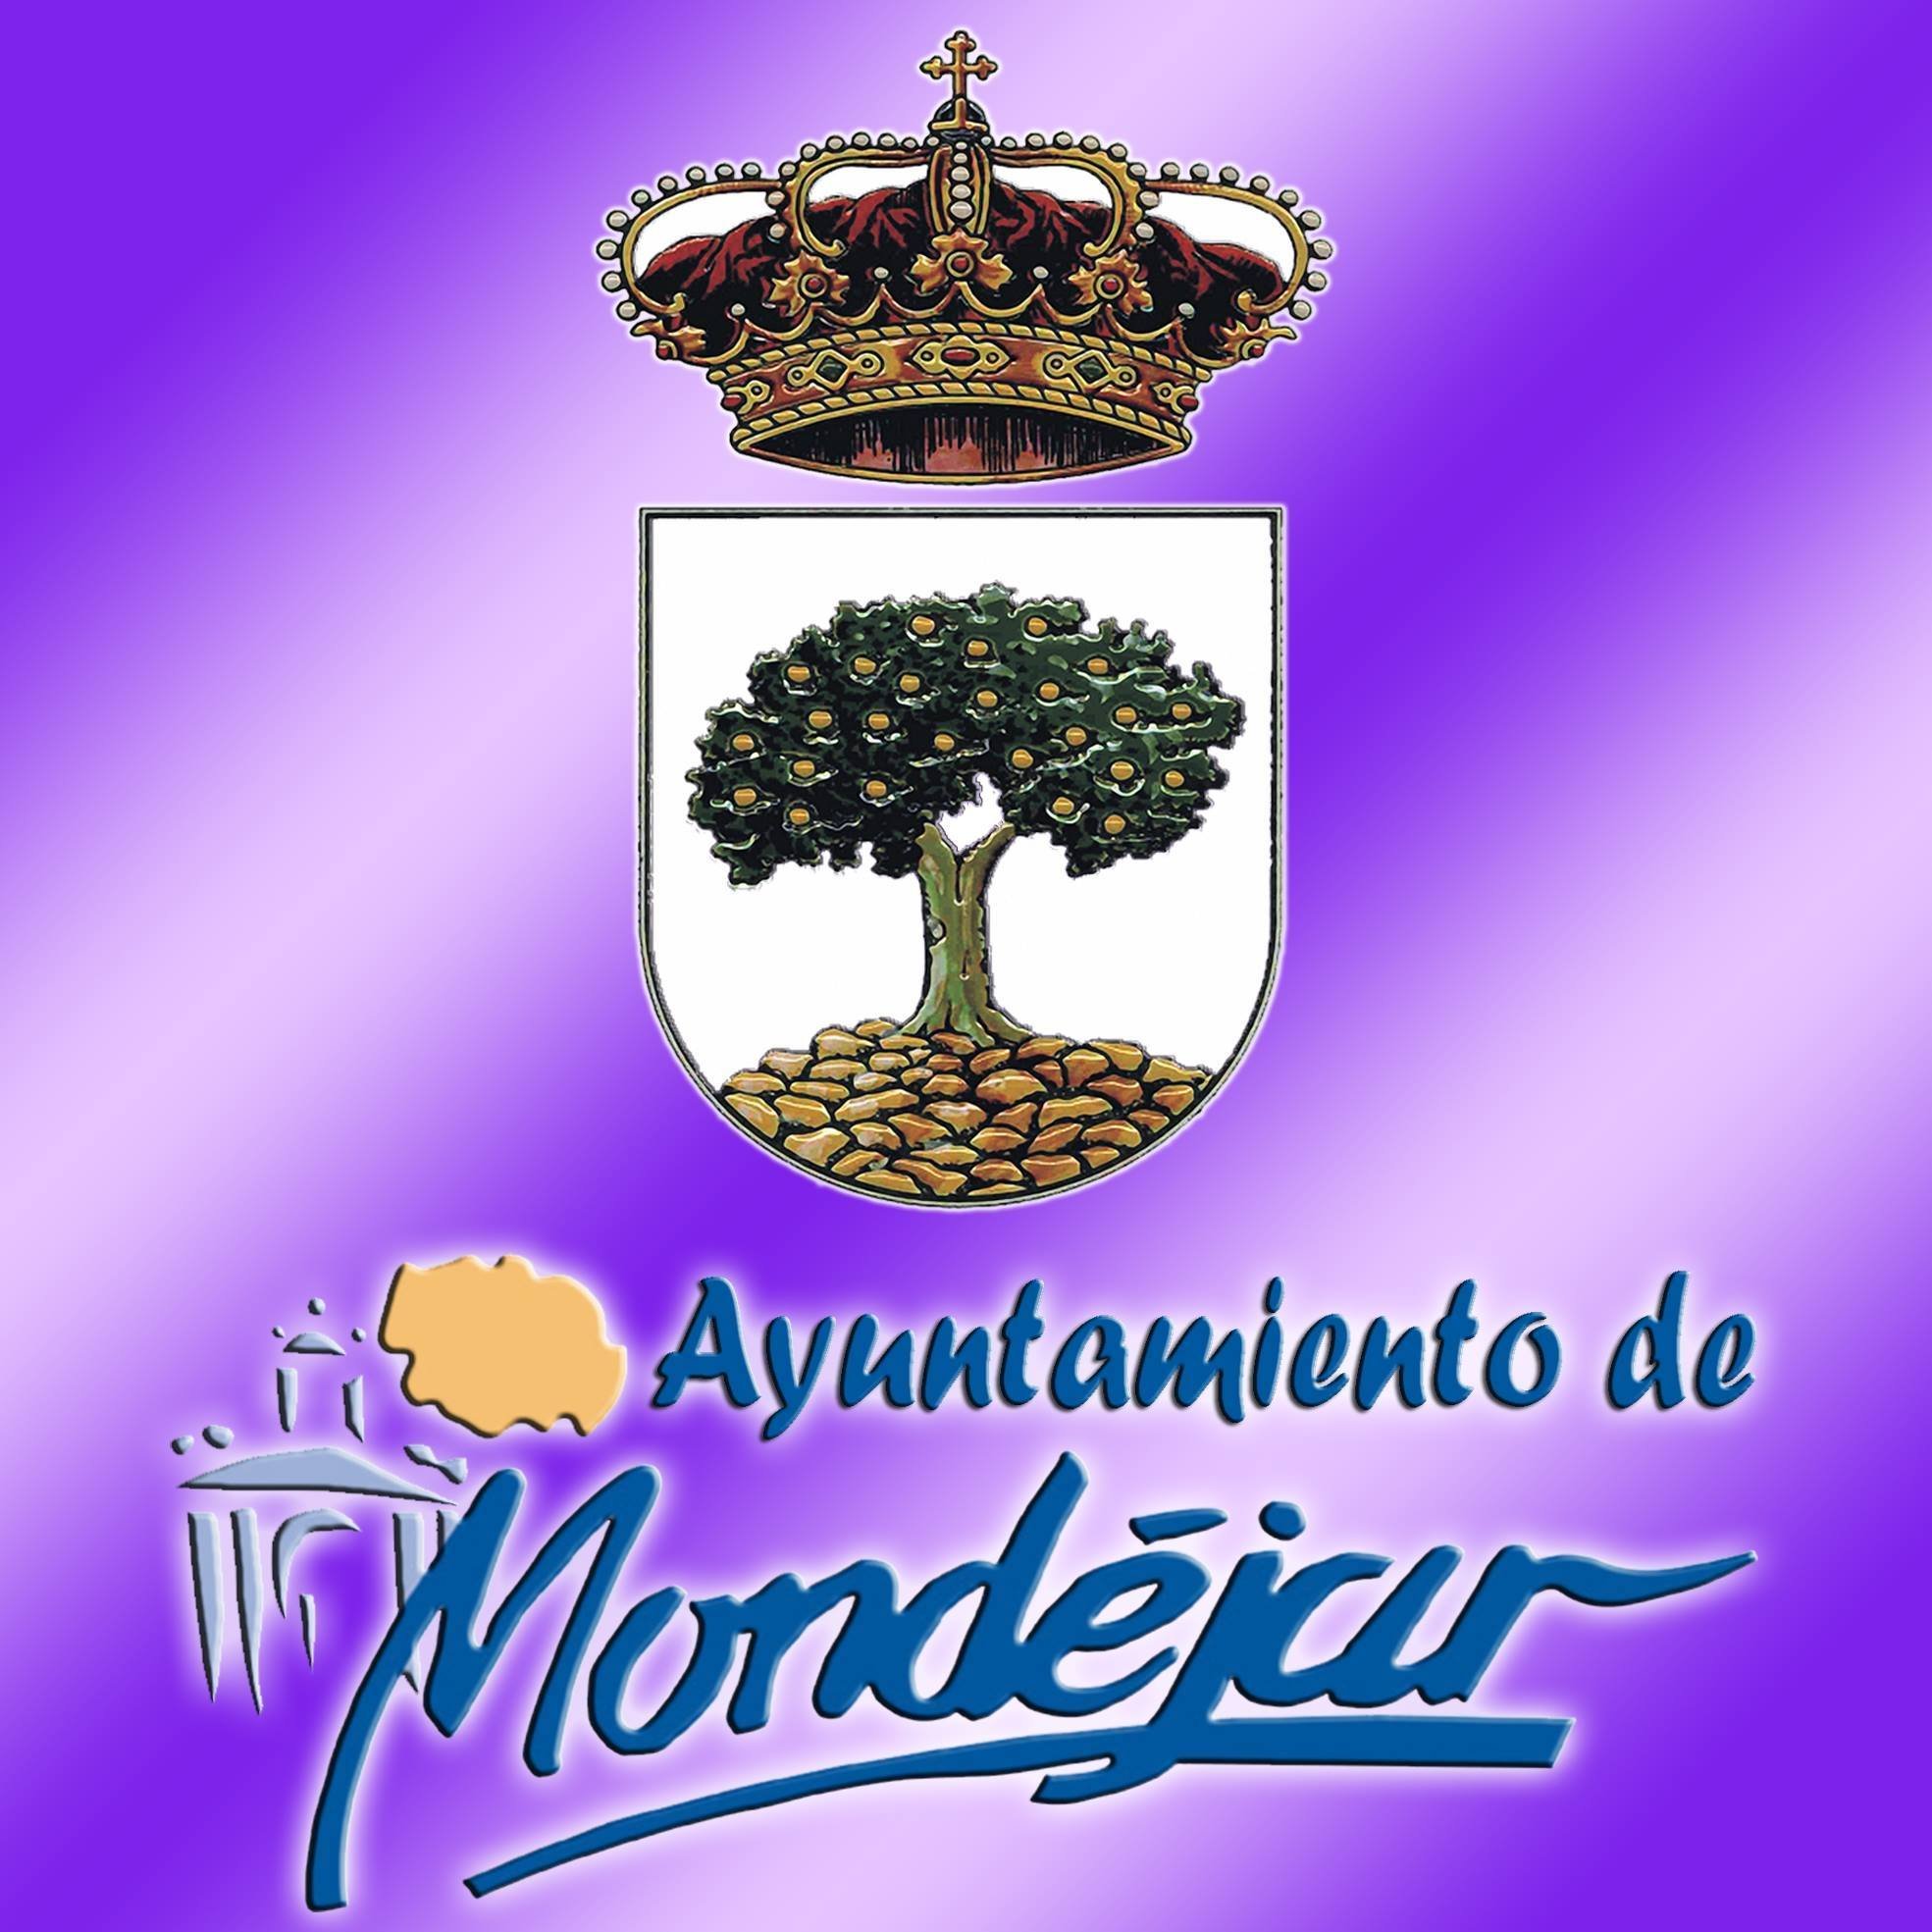 📲 Perfil oficial del Exmo. Ayuntamiento de Mondéjar. ☎️ Teléfono 949385001.